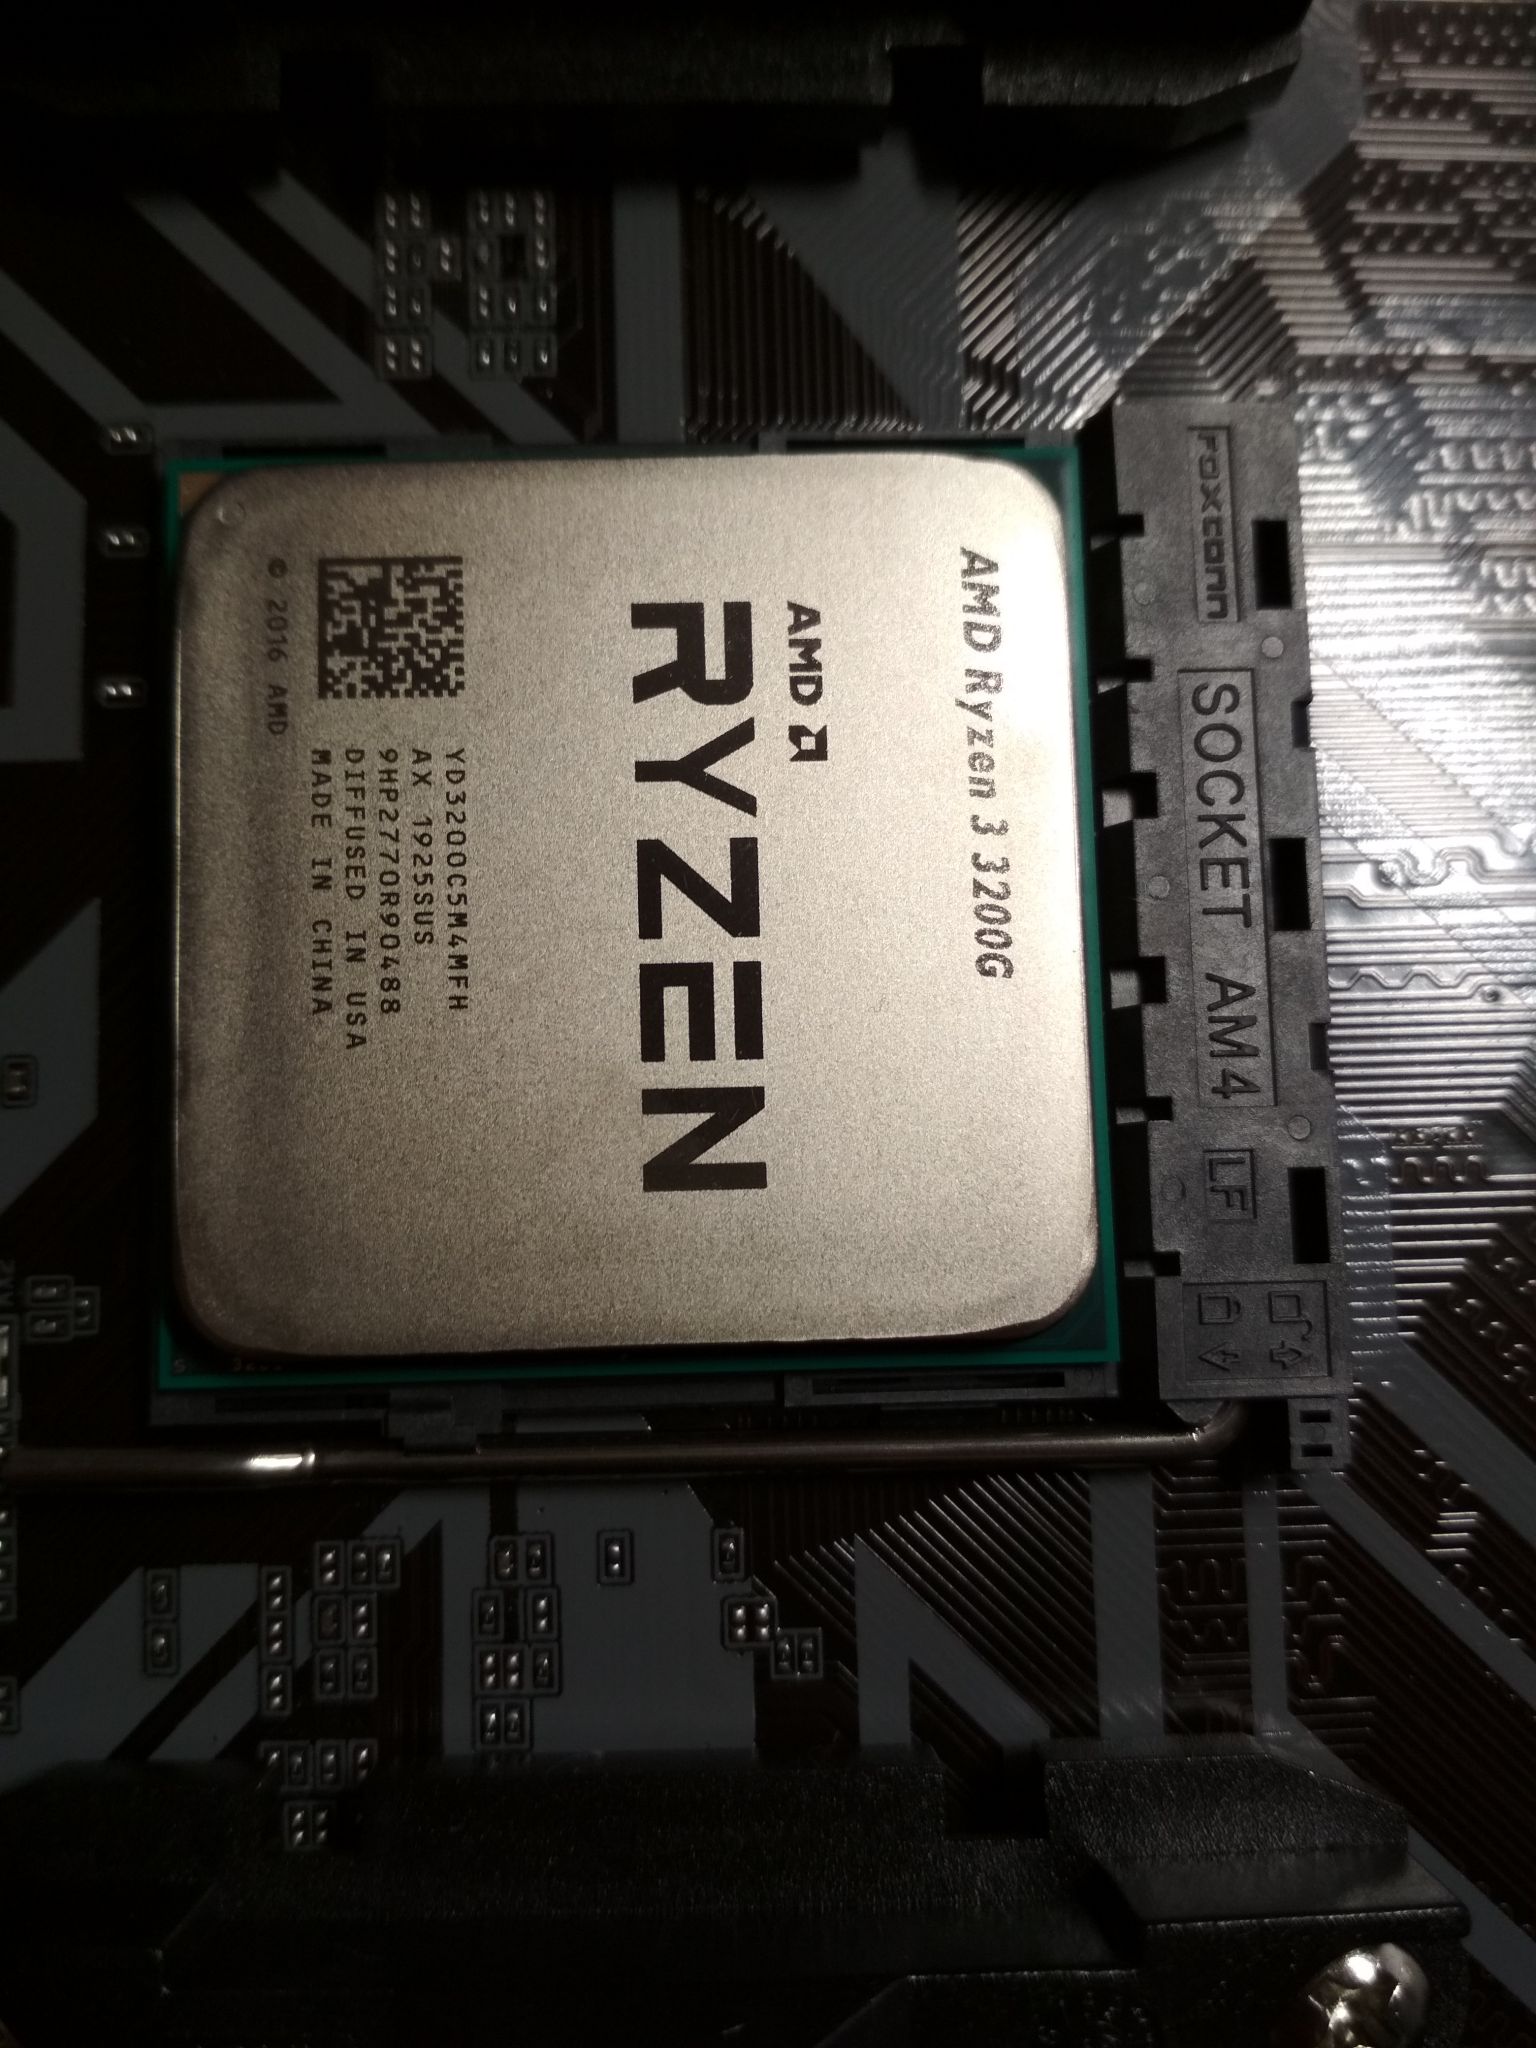 Amd ryzen 5600 g. Процессор AMD Ryzen 3 3200g. Процессор AMD Ryzen 3 3200g am4. AMD Ryzen 3 Pro 3200g. Ryzen 3 3200g vega8.